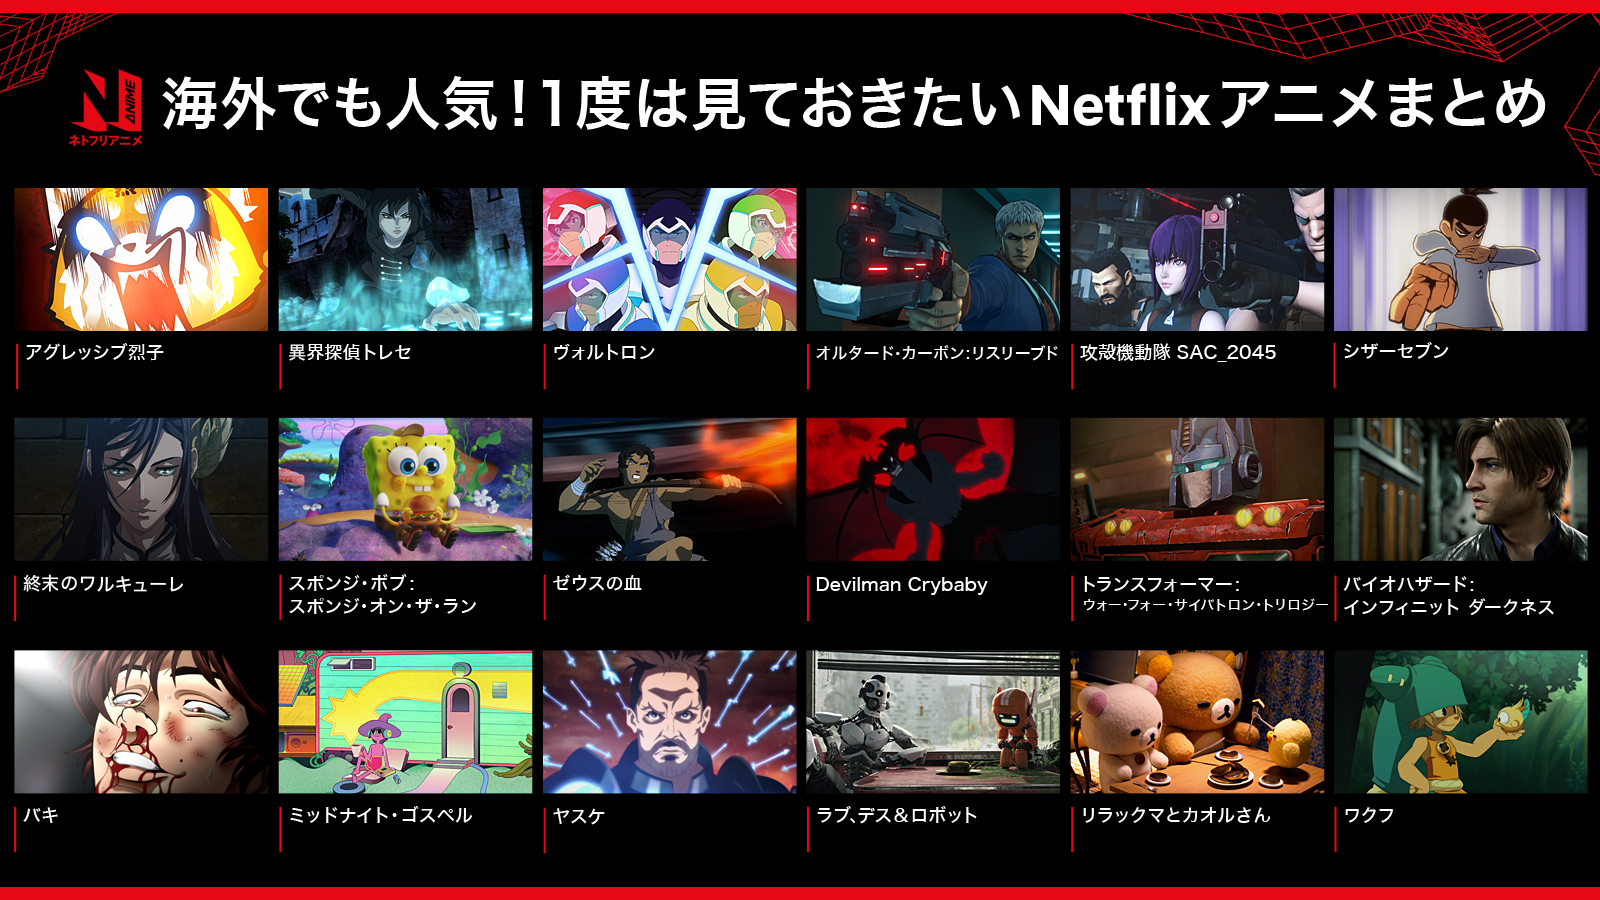 Netflix Japan Anime 海外でも人気の ネトフリアニメ を 18作品まとめてみました ネトフリアニメ の世界へ 一緒に飛び込もう 今後の海外アニメーションにも期待 T Co Uxothfghrd Twitter